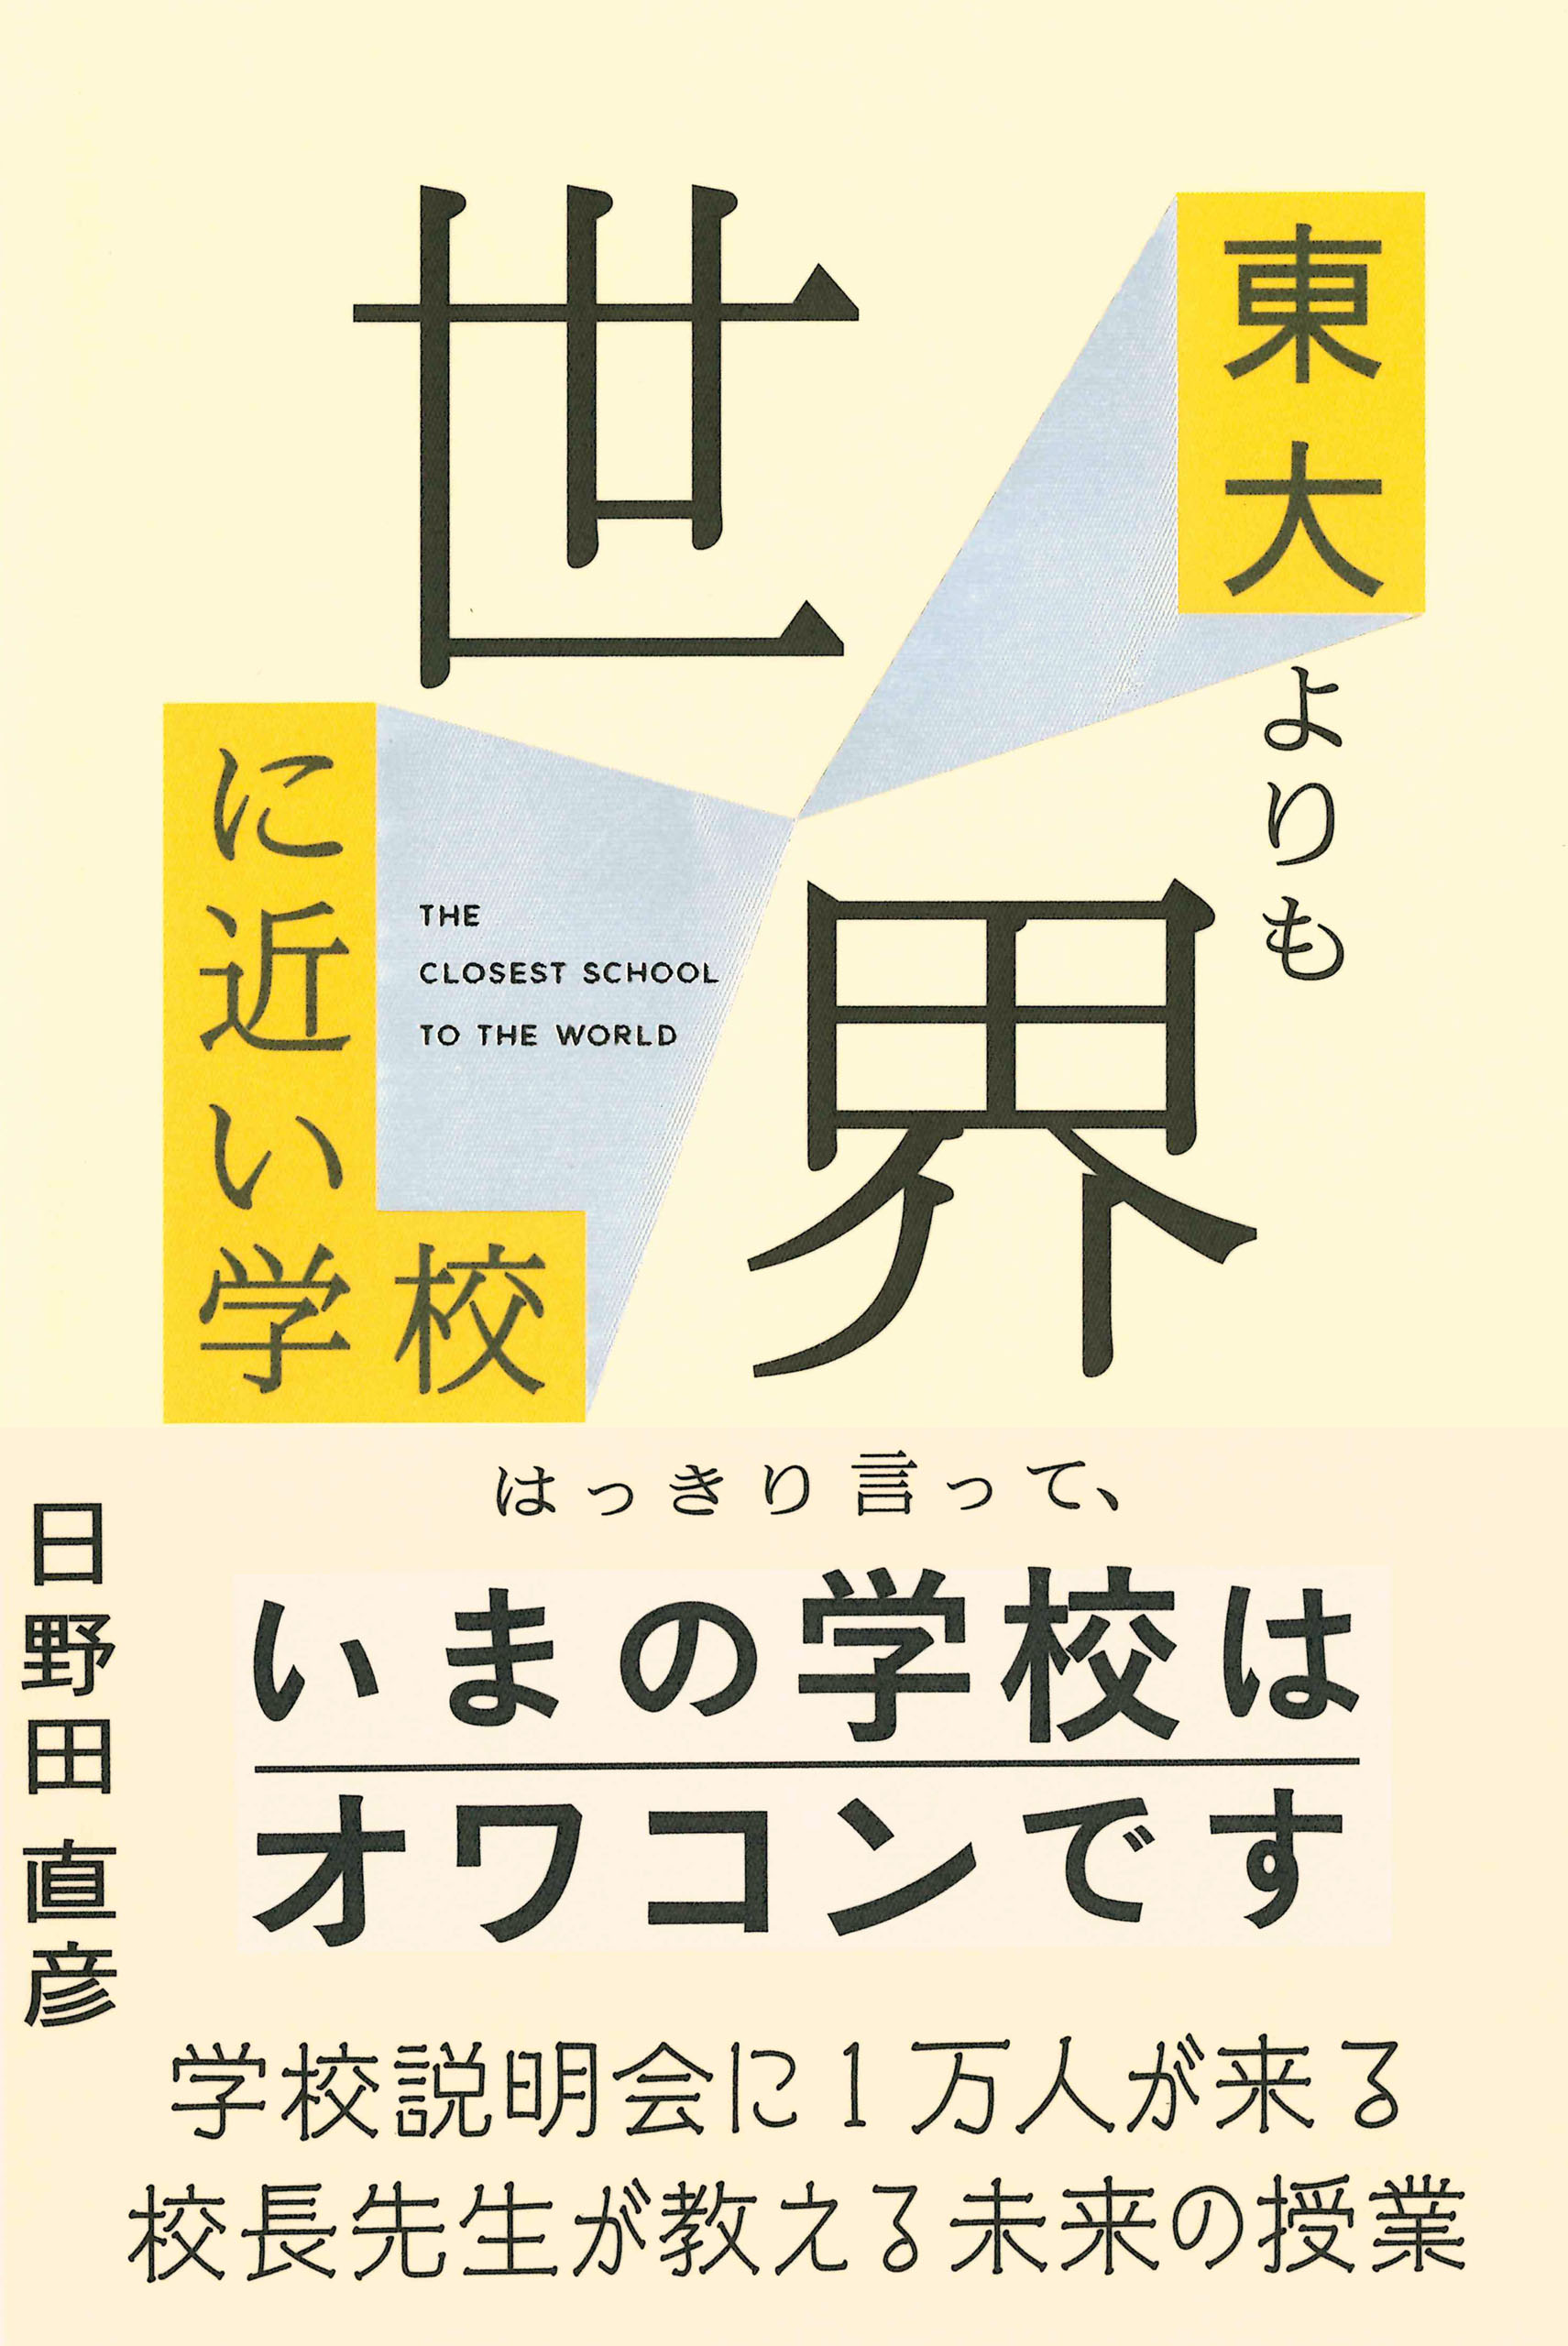 9/13（水）日野田直彦『東大よりも世界に近い学校』刊行記念トークイベントを開催します